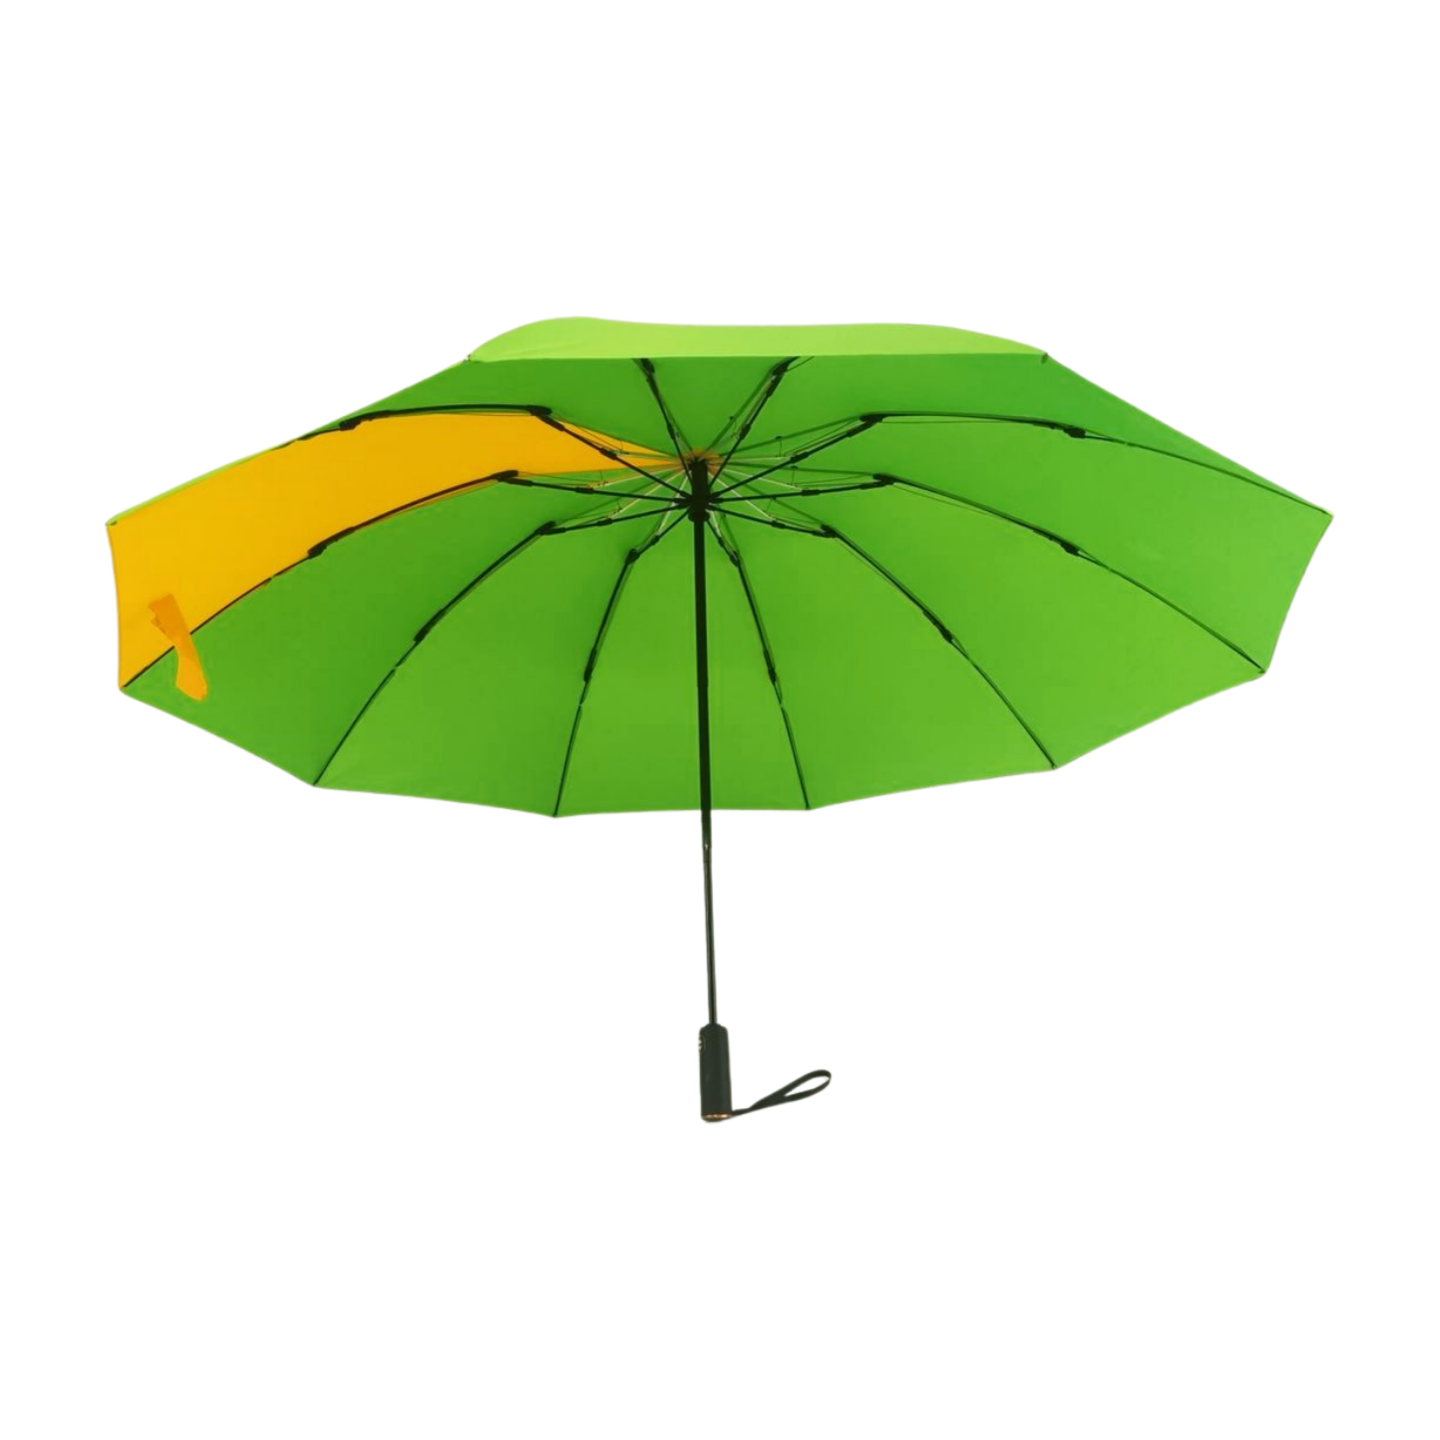 https://www.hodaumbrella.com/huge-size-reve…lding-umbrella-product/